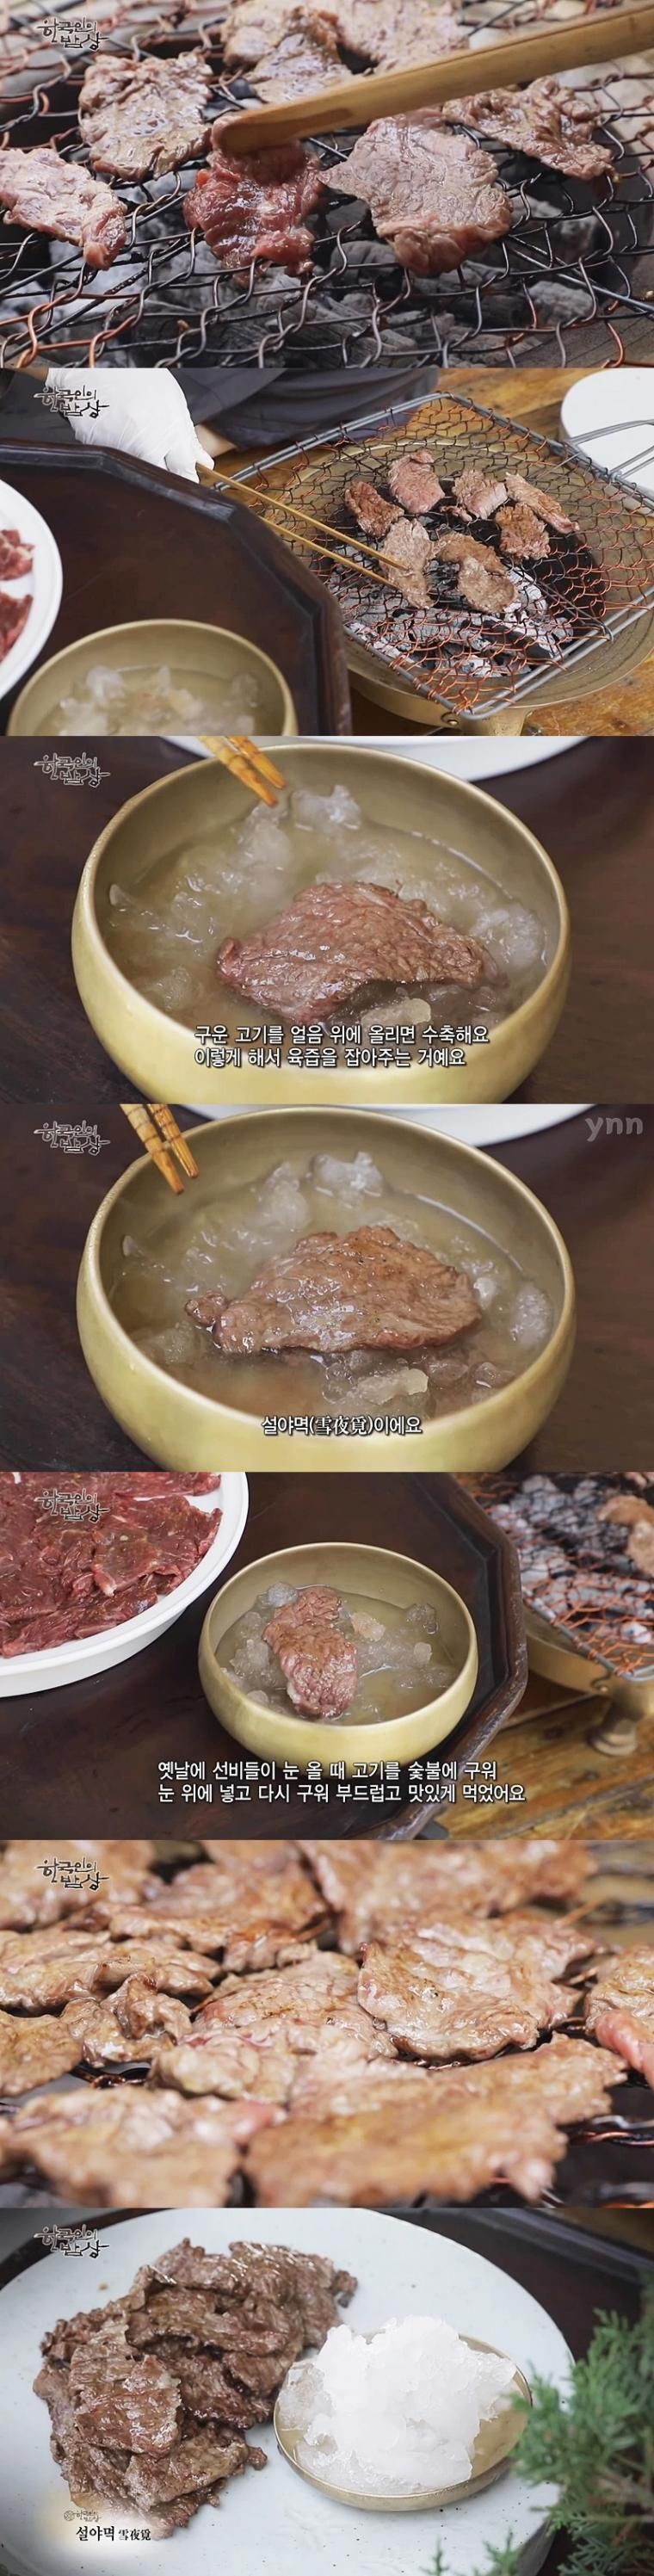 조선시대부터 검증된 고기 굽는 방법  선비들 고기 구워 먹던 방식 설야멱